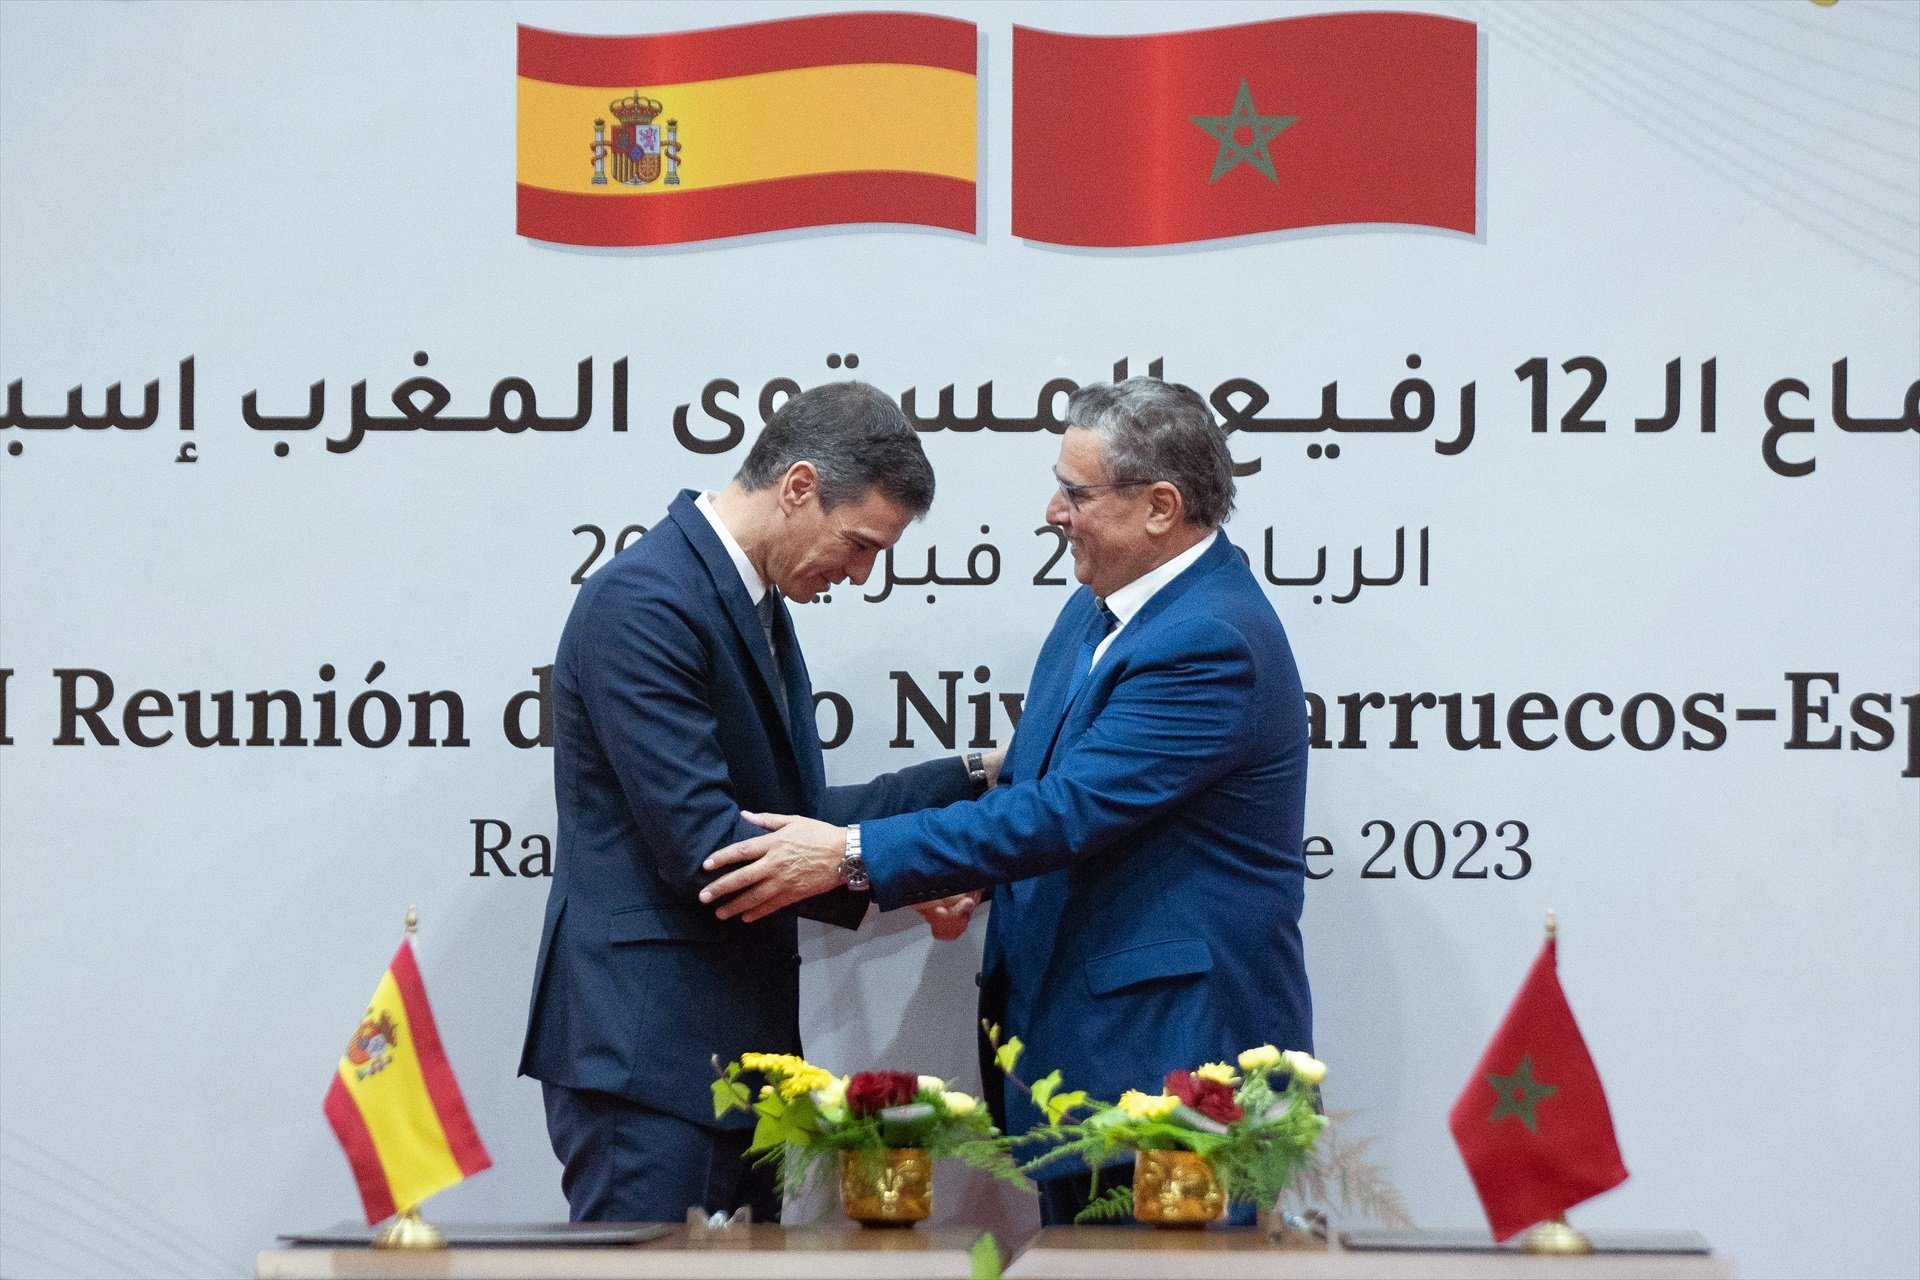 Espanya es queixa al Marroc per haver dit que Ceuta i Melilla són marroquines